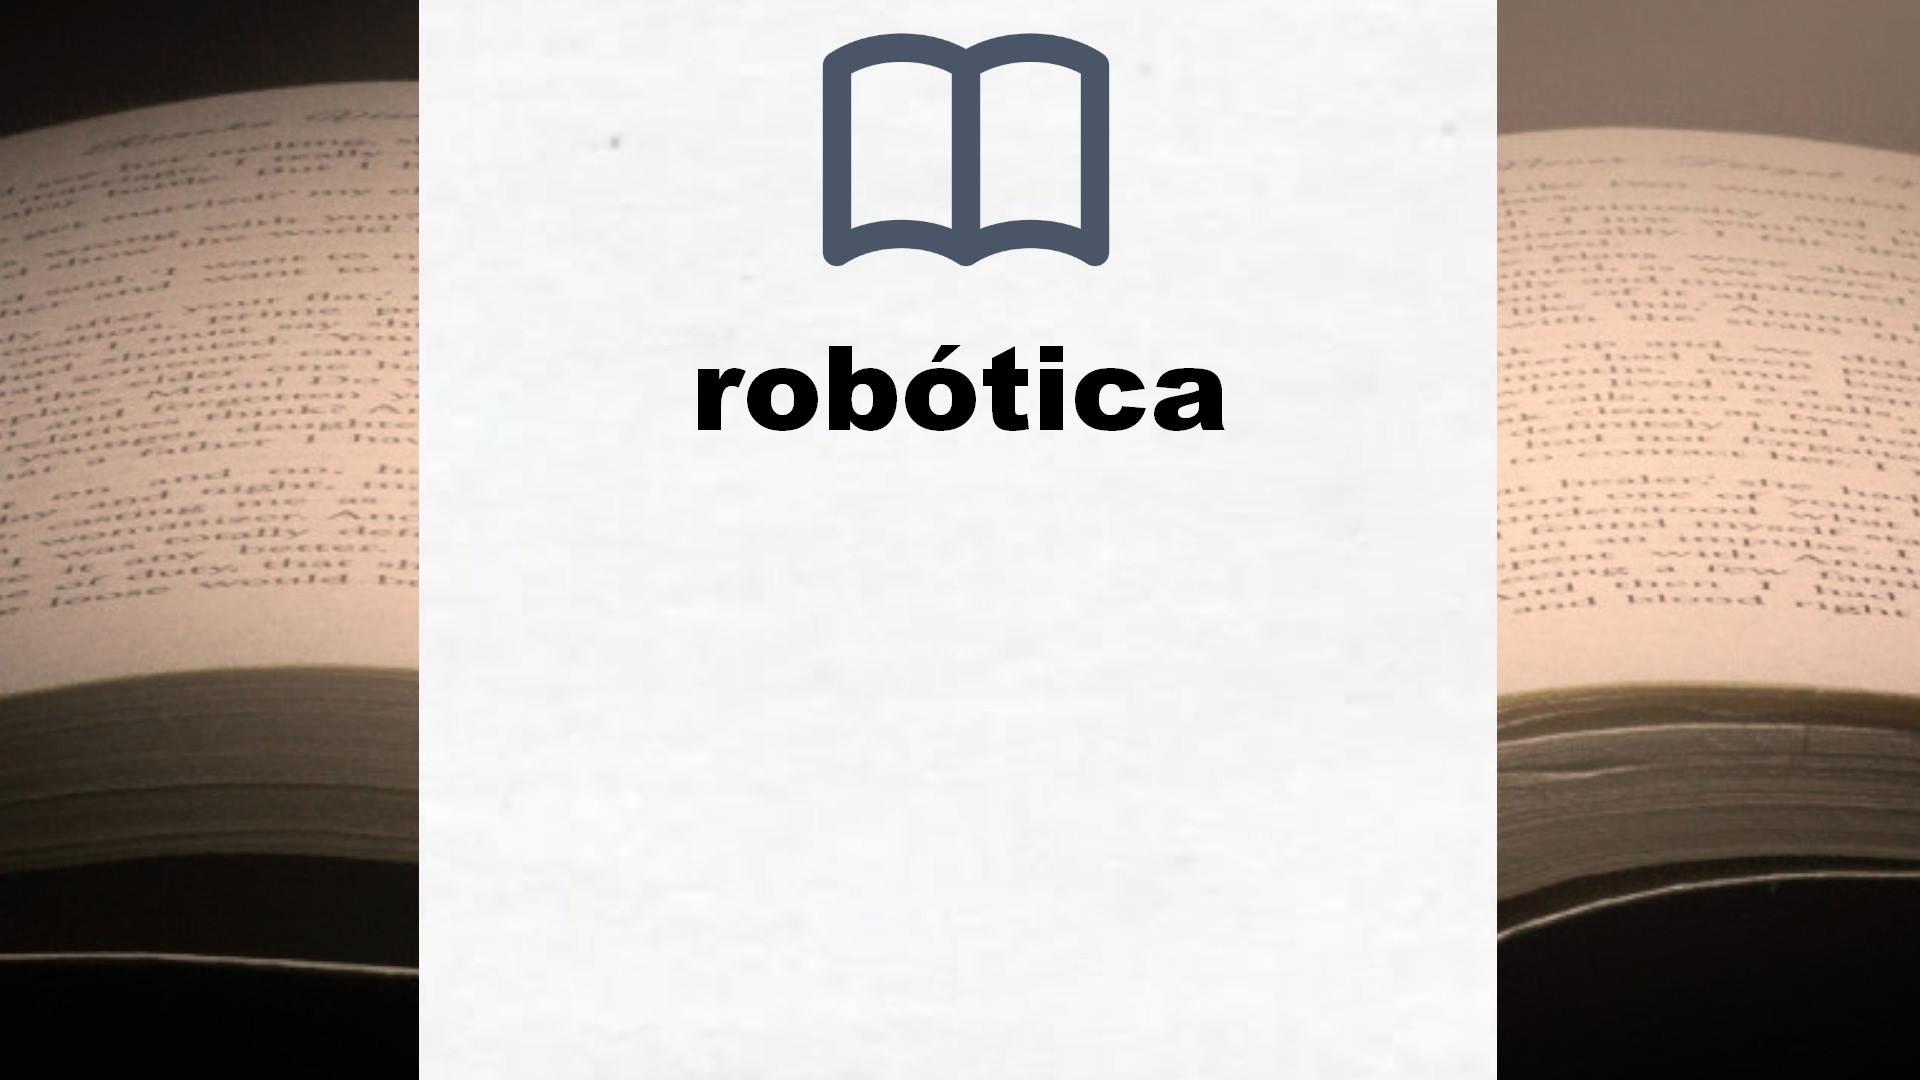 Libros sobre robótica